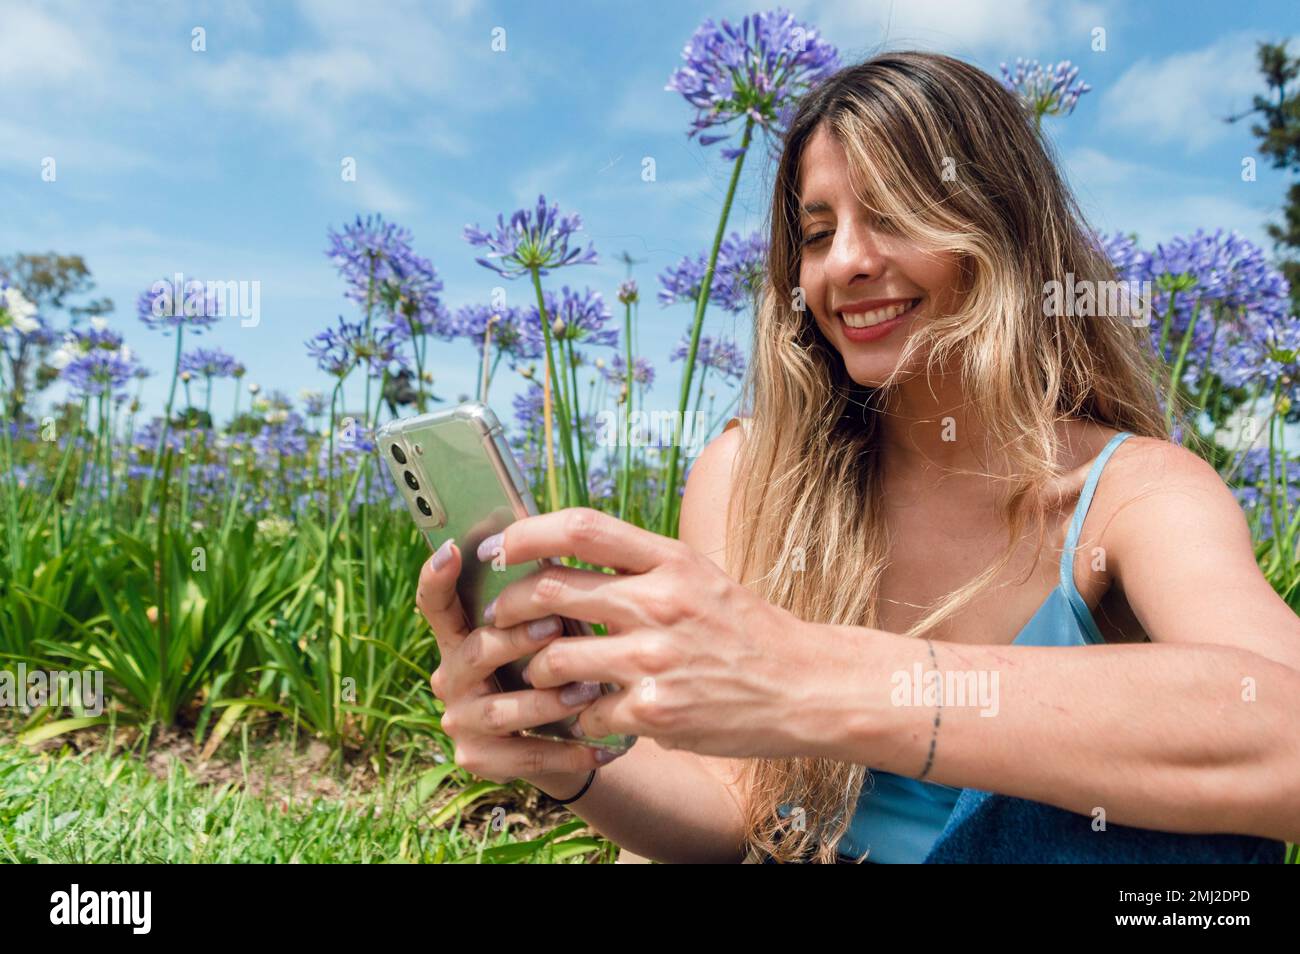 ritratto di giovane donna latina di etnia colombiana, capelli lunghi, abiti blu, sorridente, divertito seduto nel parco a riposo con il telefono, con volata Foto Stock